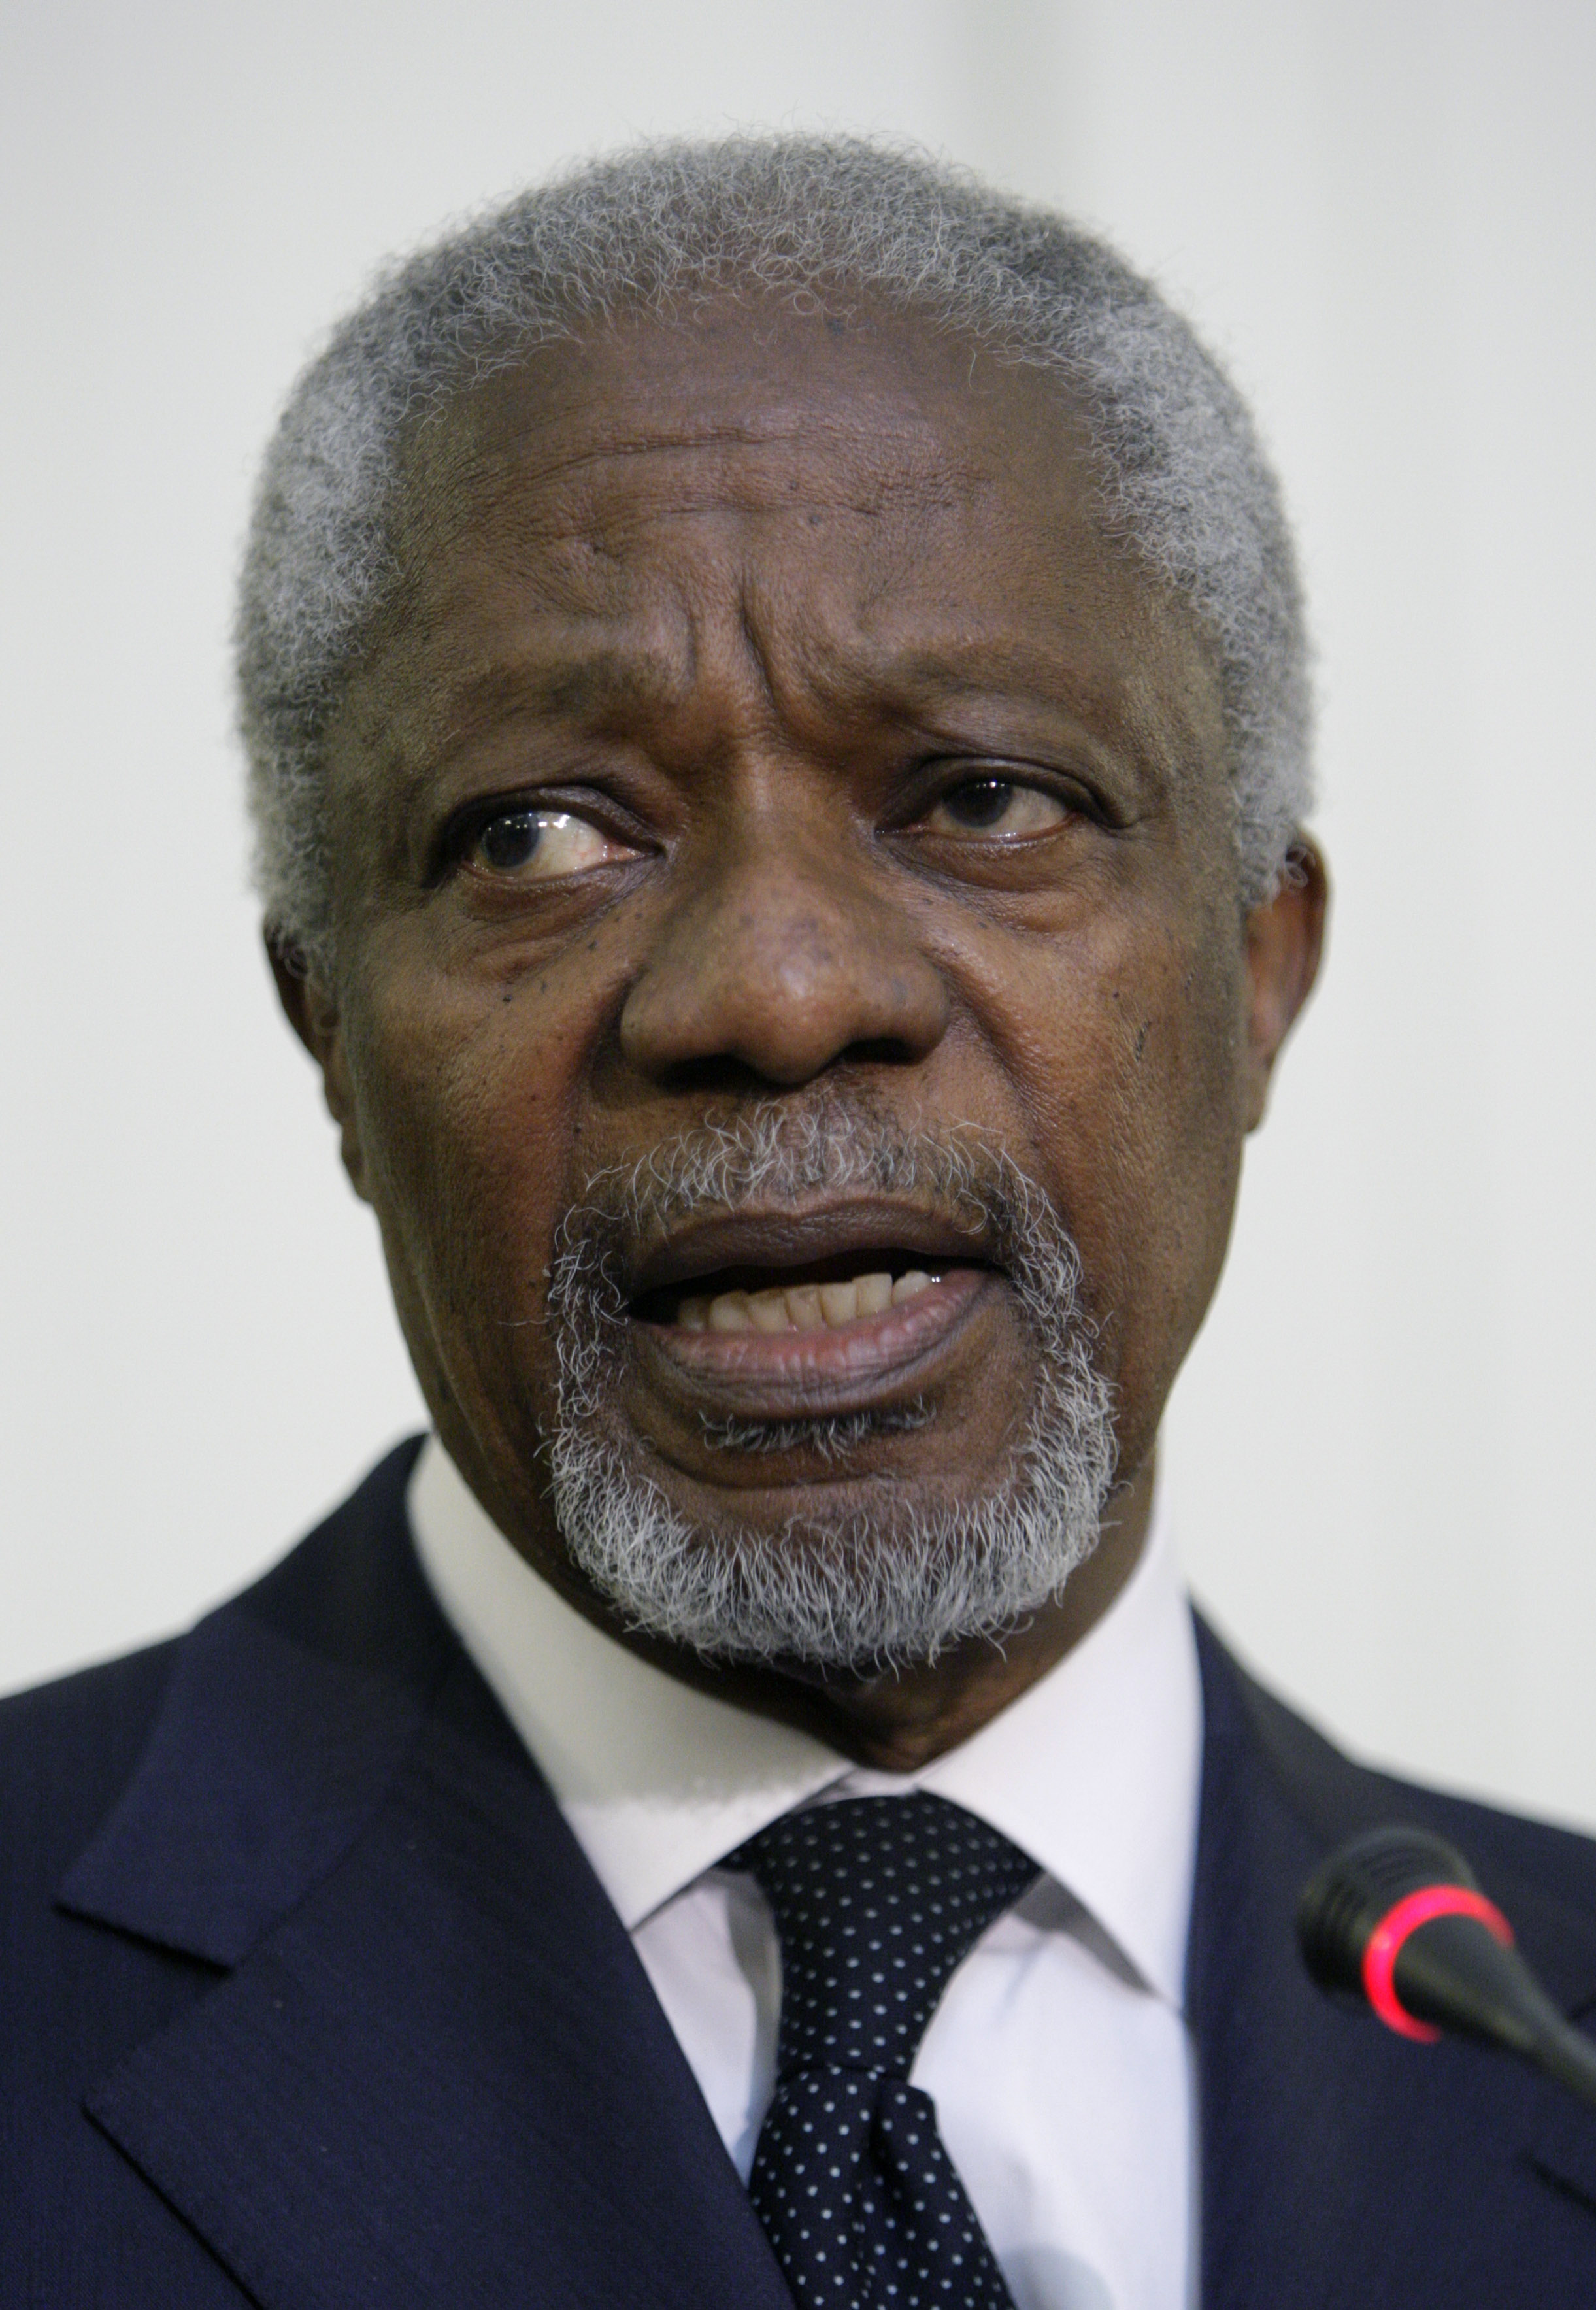 Regimen har i ett brev till det internationella sändebudet Kofi Annan lovat att upphöra med alla stridshandlingar.